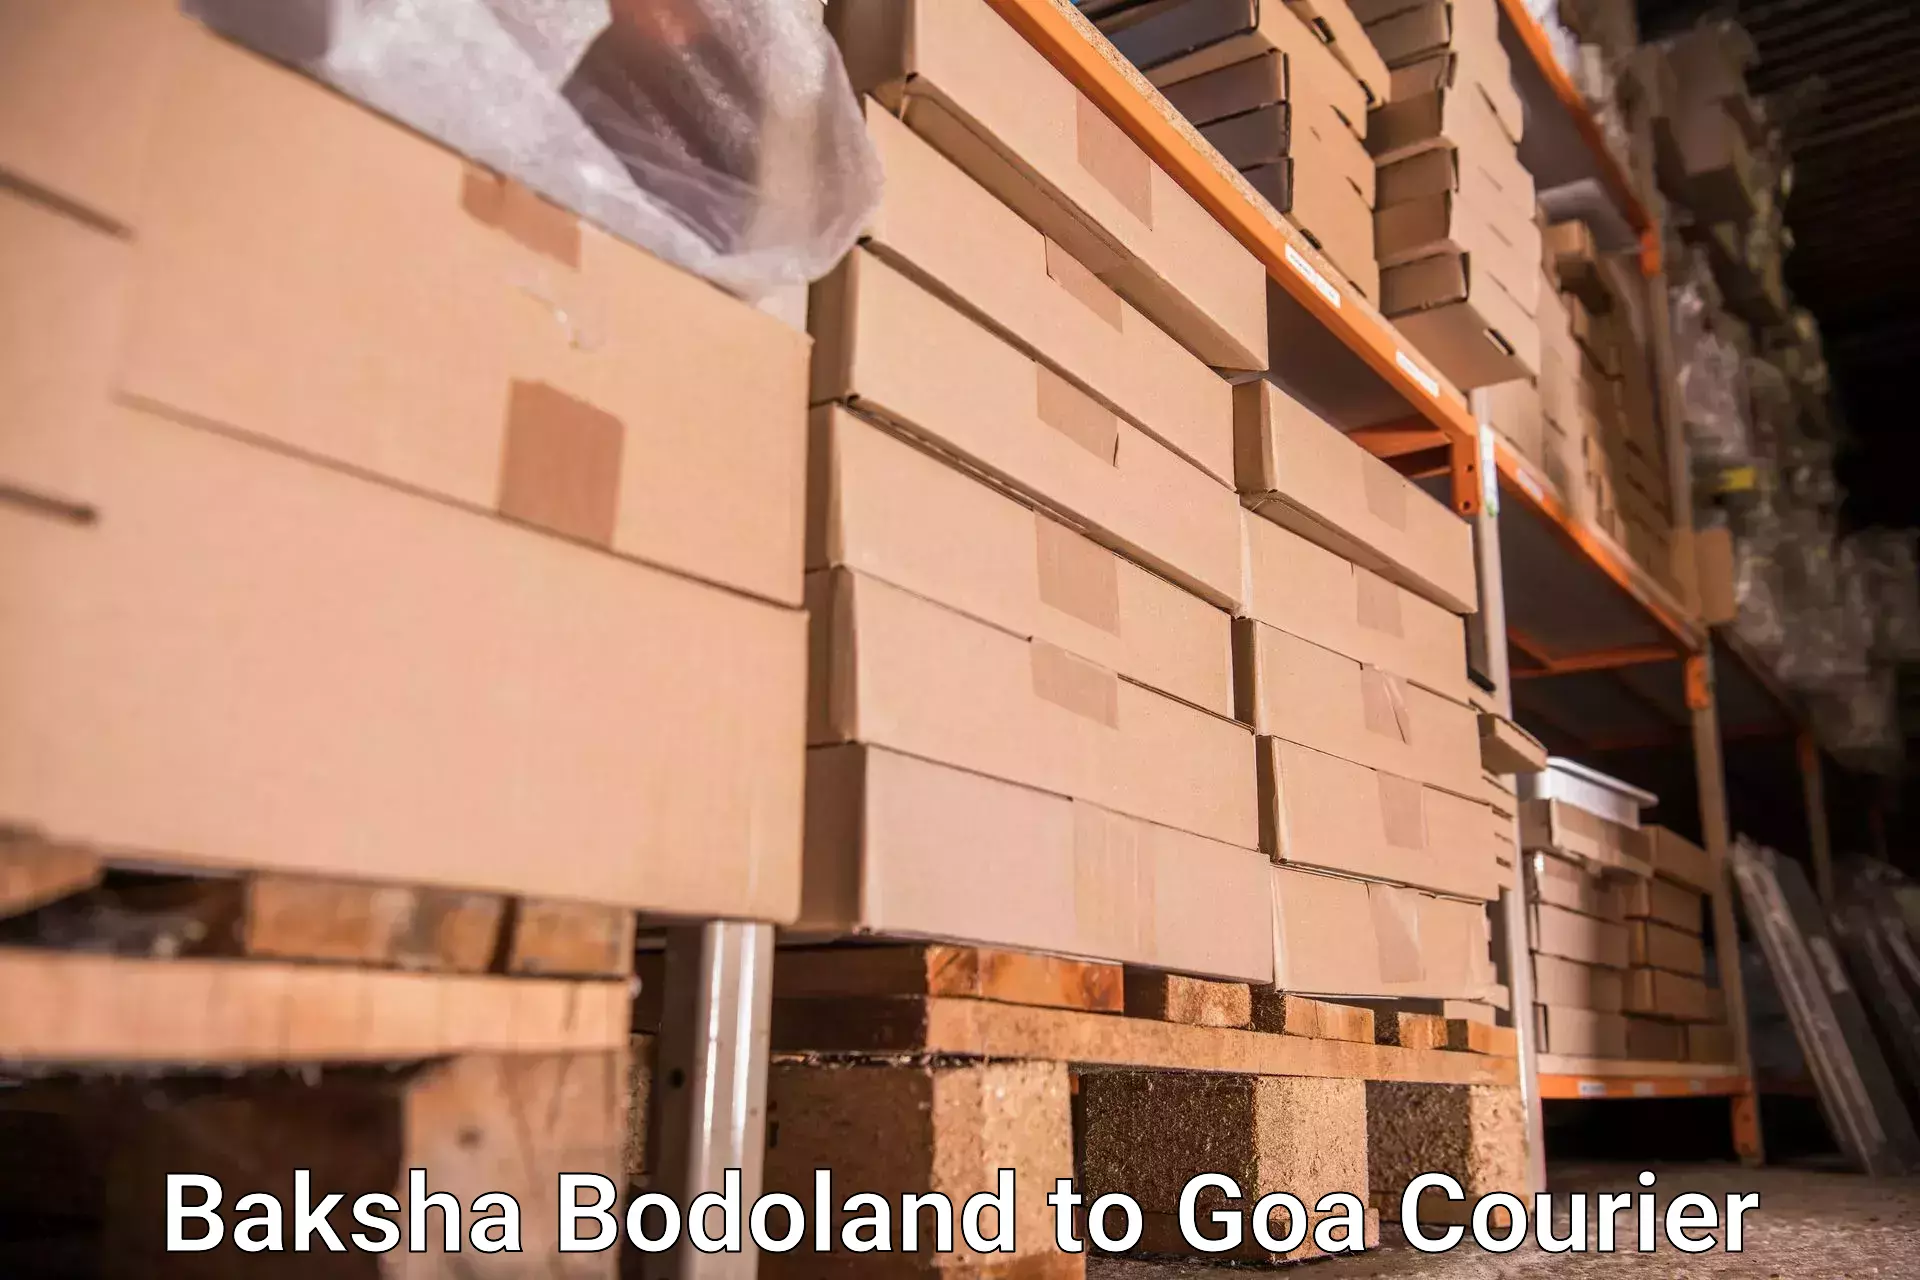 Baggage transport innovation Baksha Bodoland to Ponda